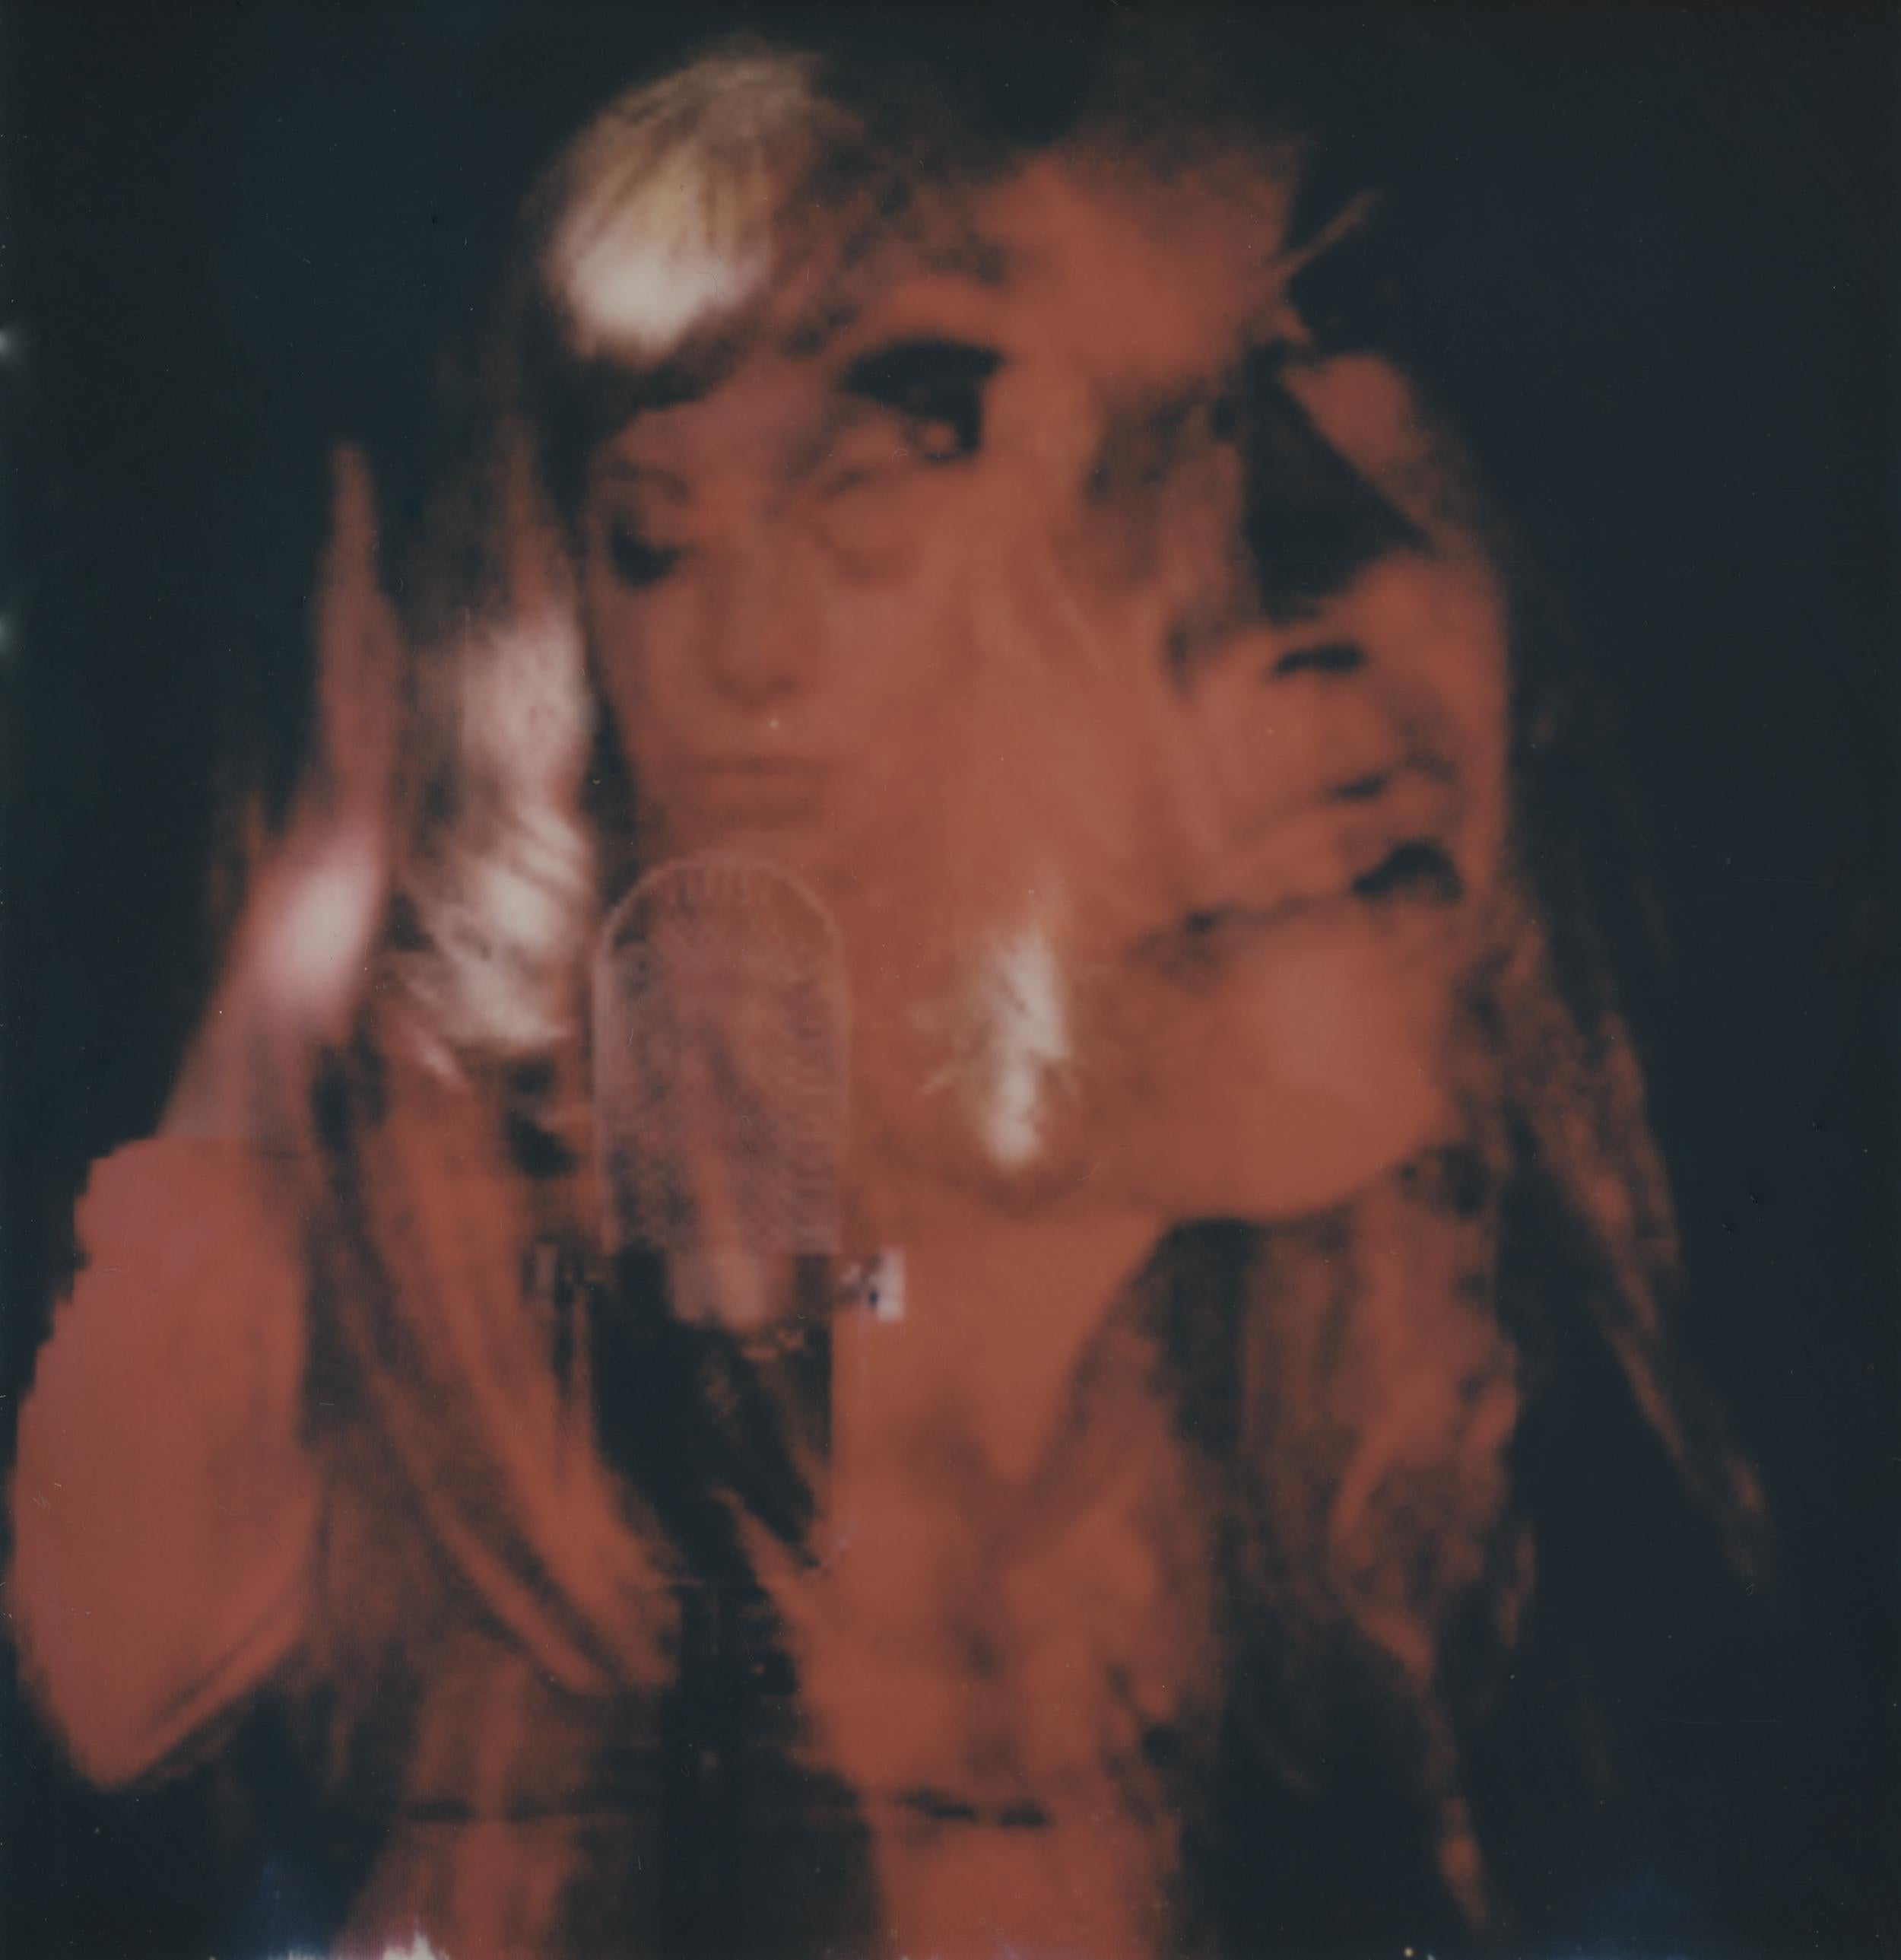 Clare Marie Bailey Nude Photograph – Lullaby für Luna - Zeitgenössisch, Polaroid, Frau, 21. Jahrhundert